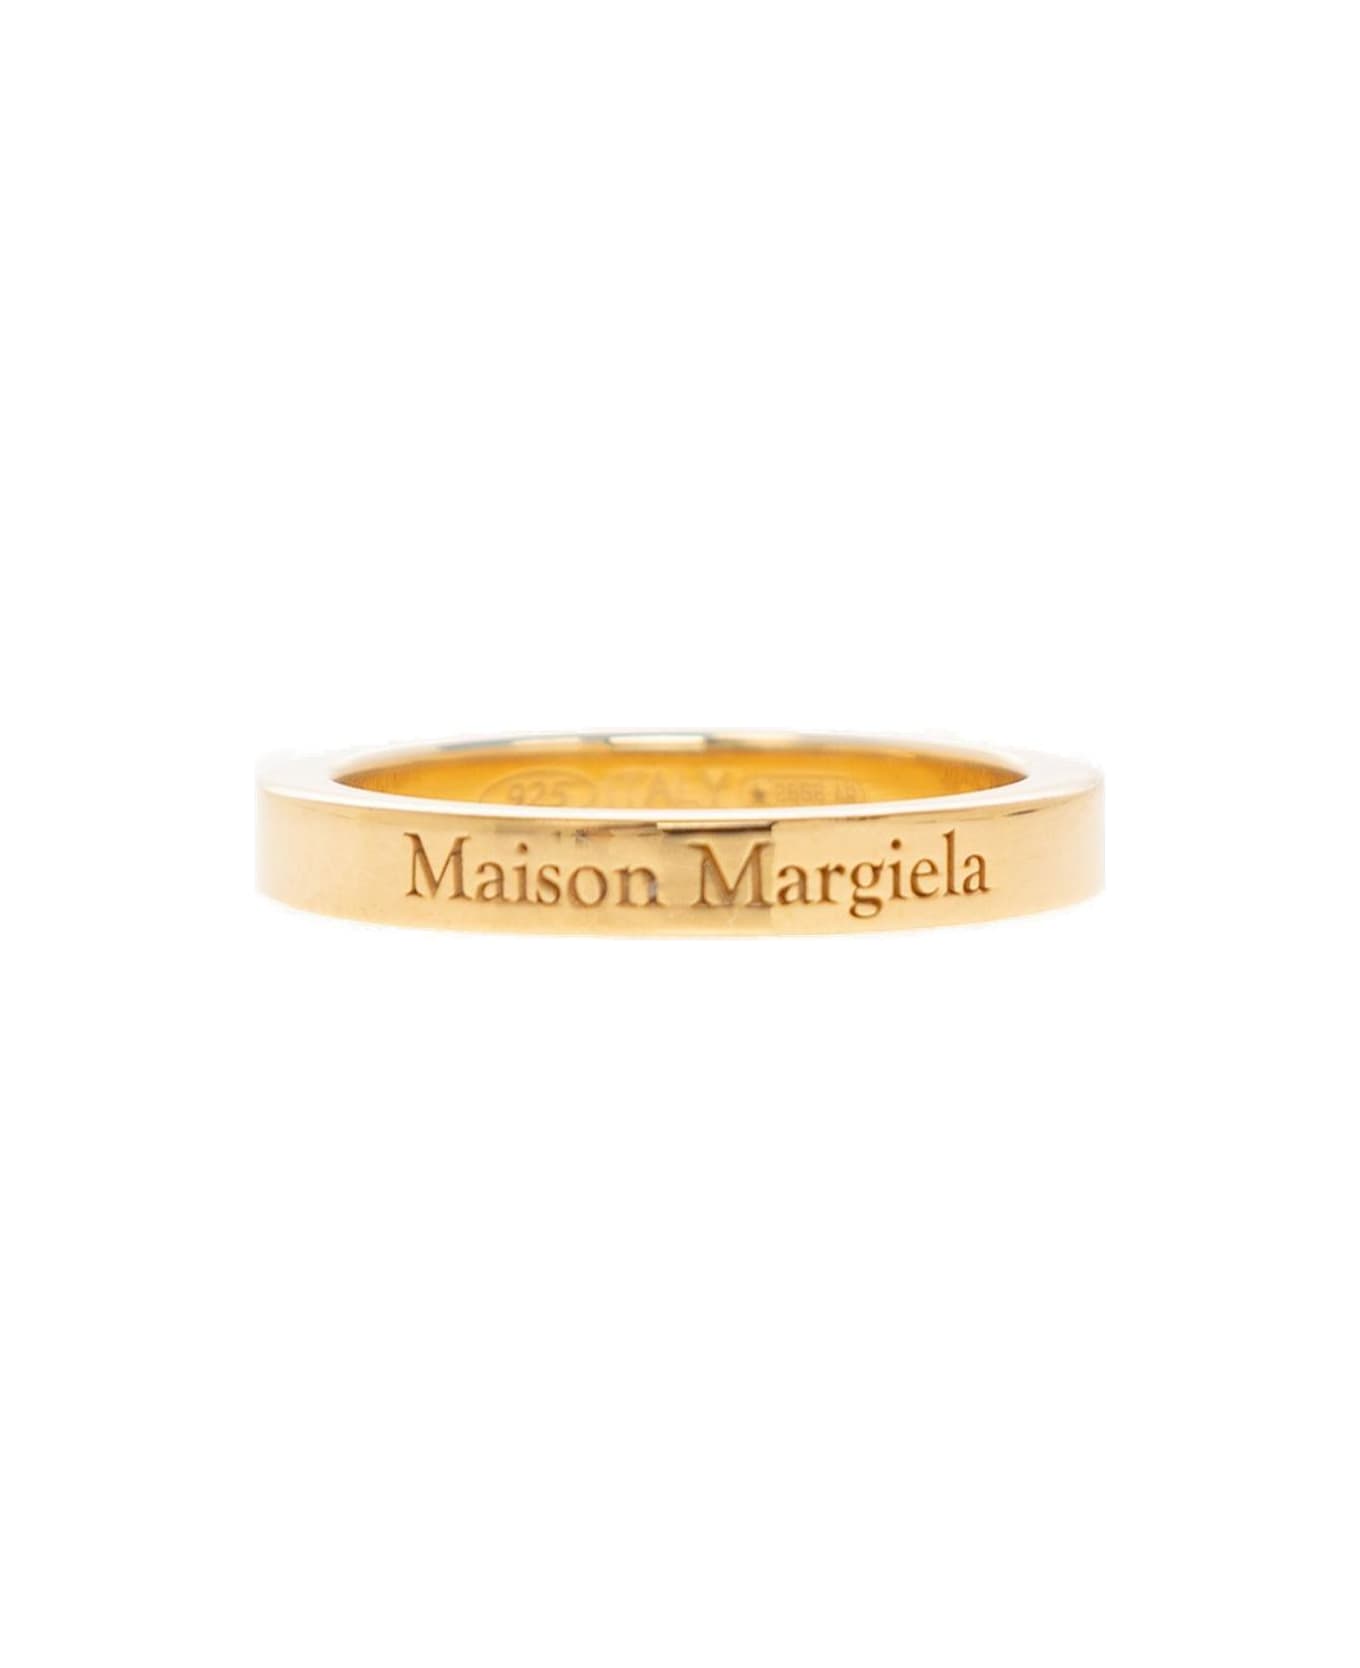 Maison Margiela Logo Engraved Ring - YELLOW